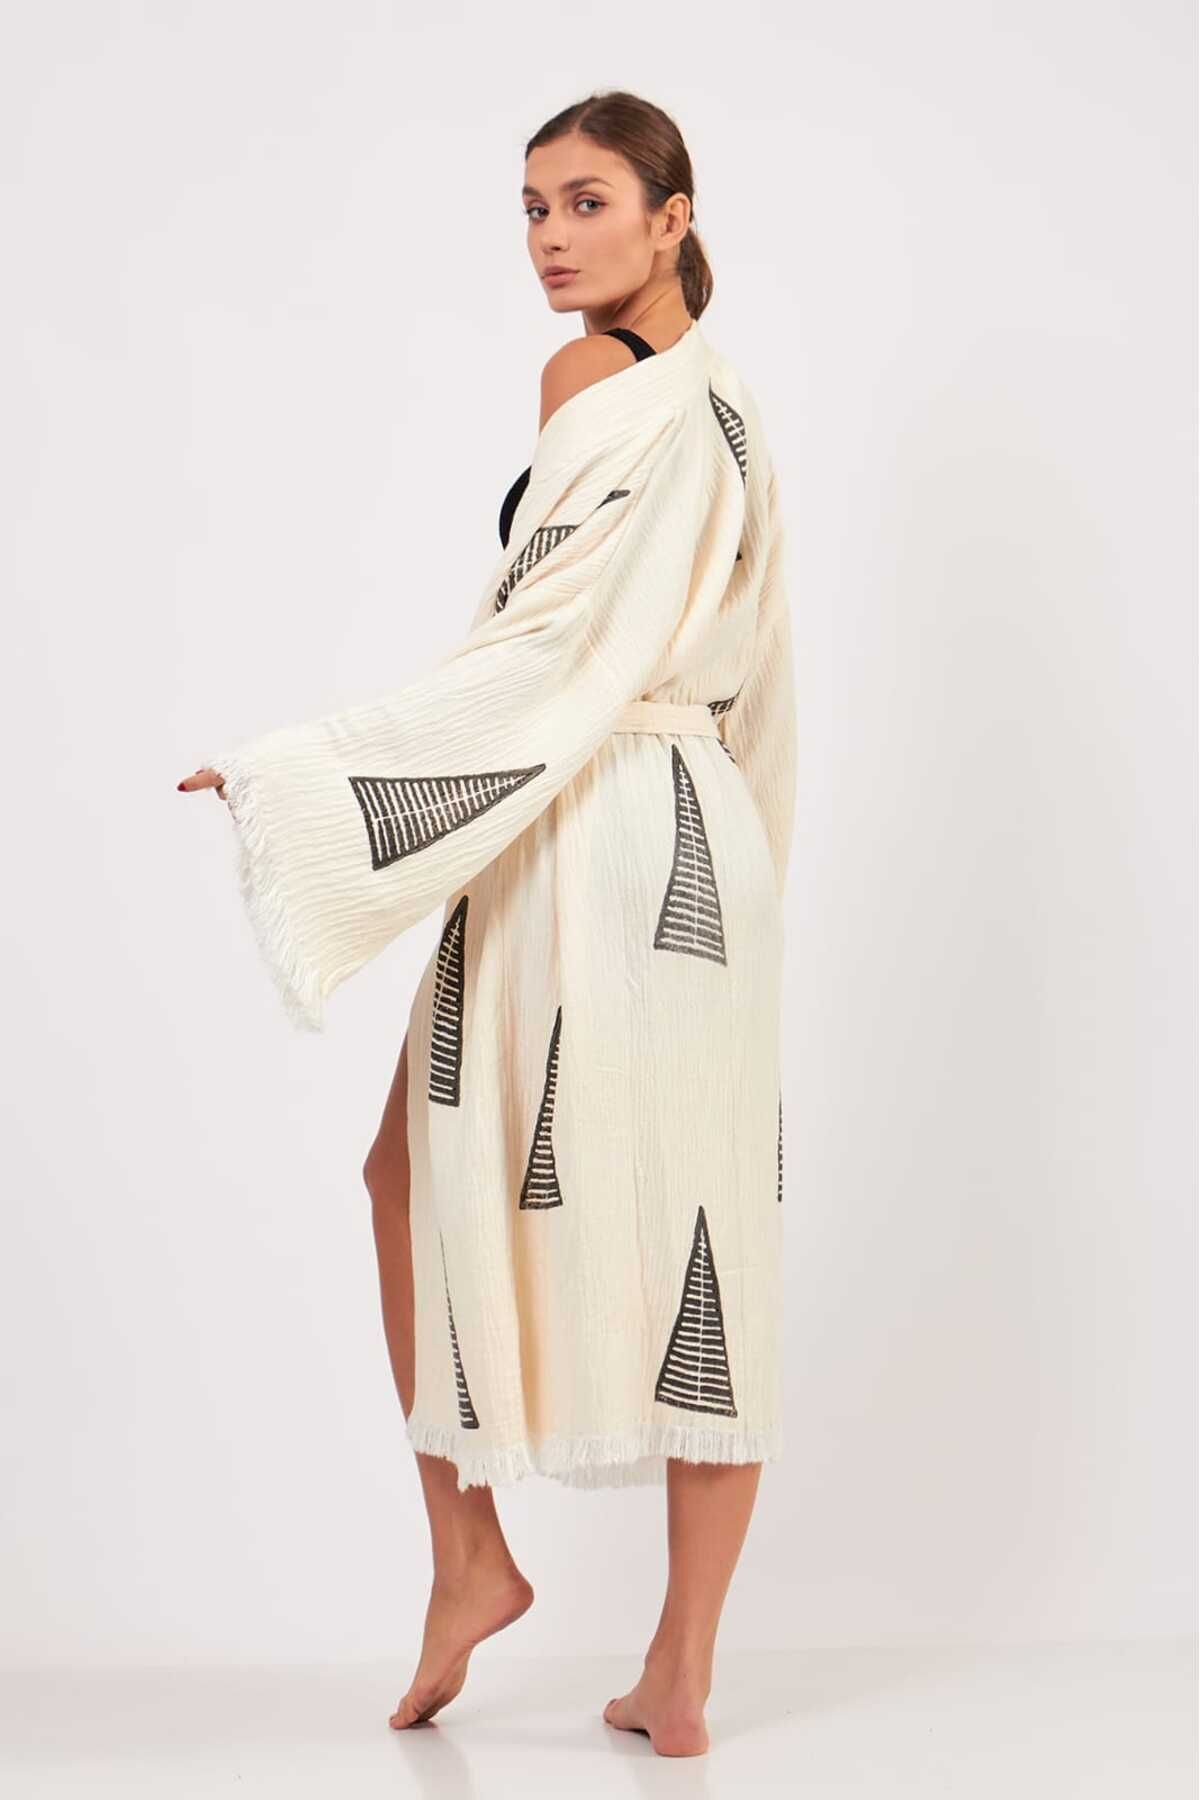 Befera Design Müslin Kimono %100 Pamuklu Piramit Desenli Bornoz Kaftan Sabahlık